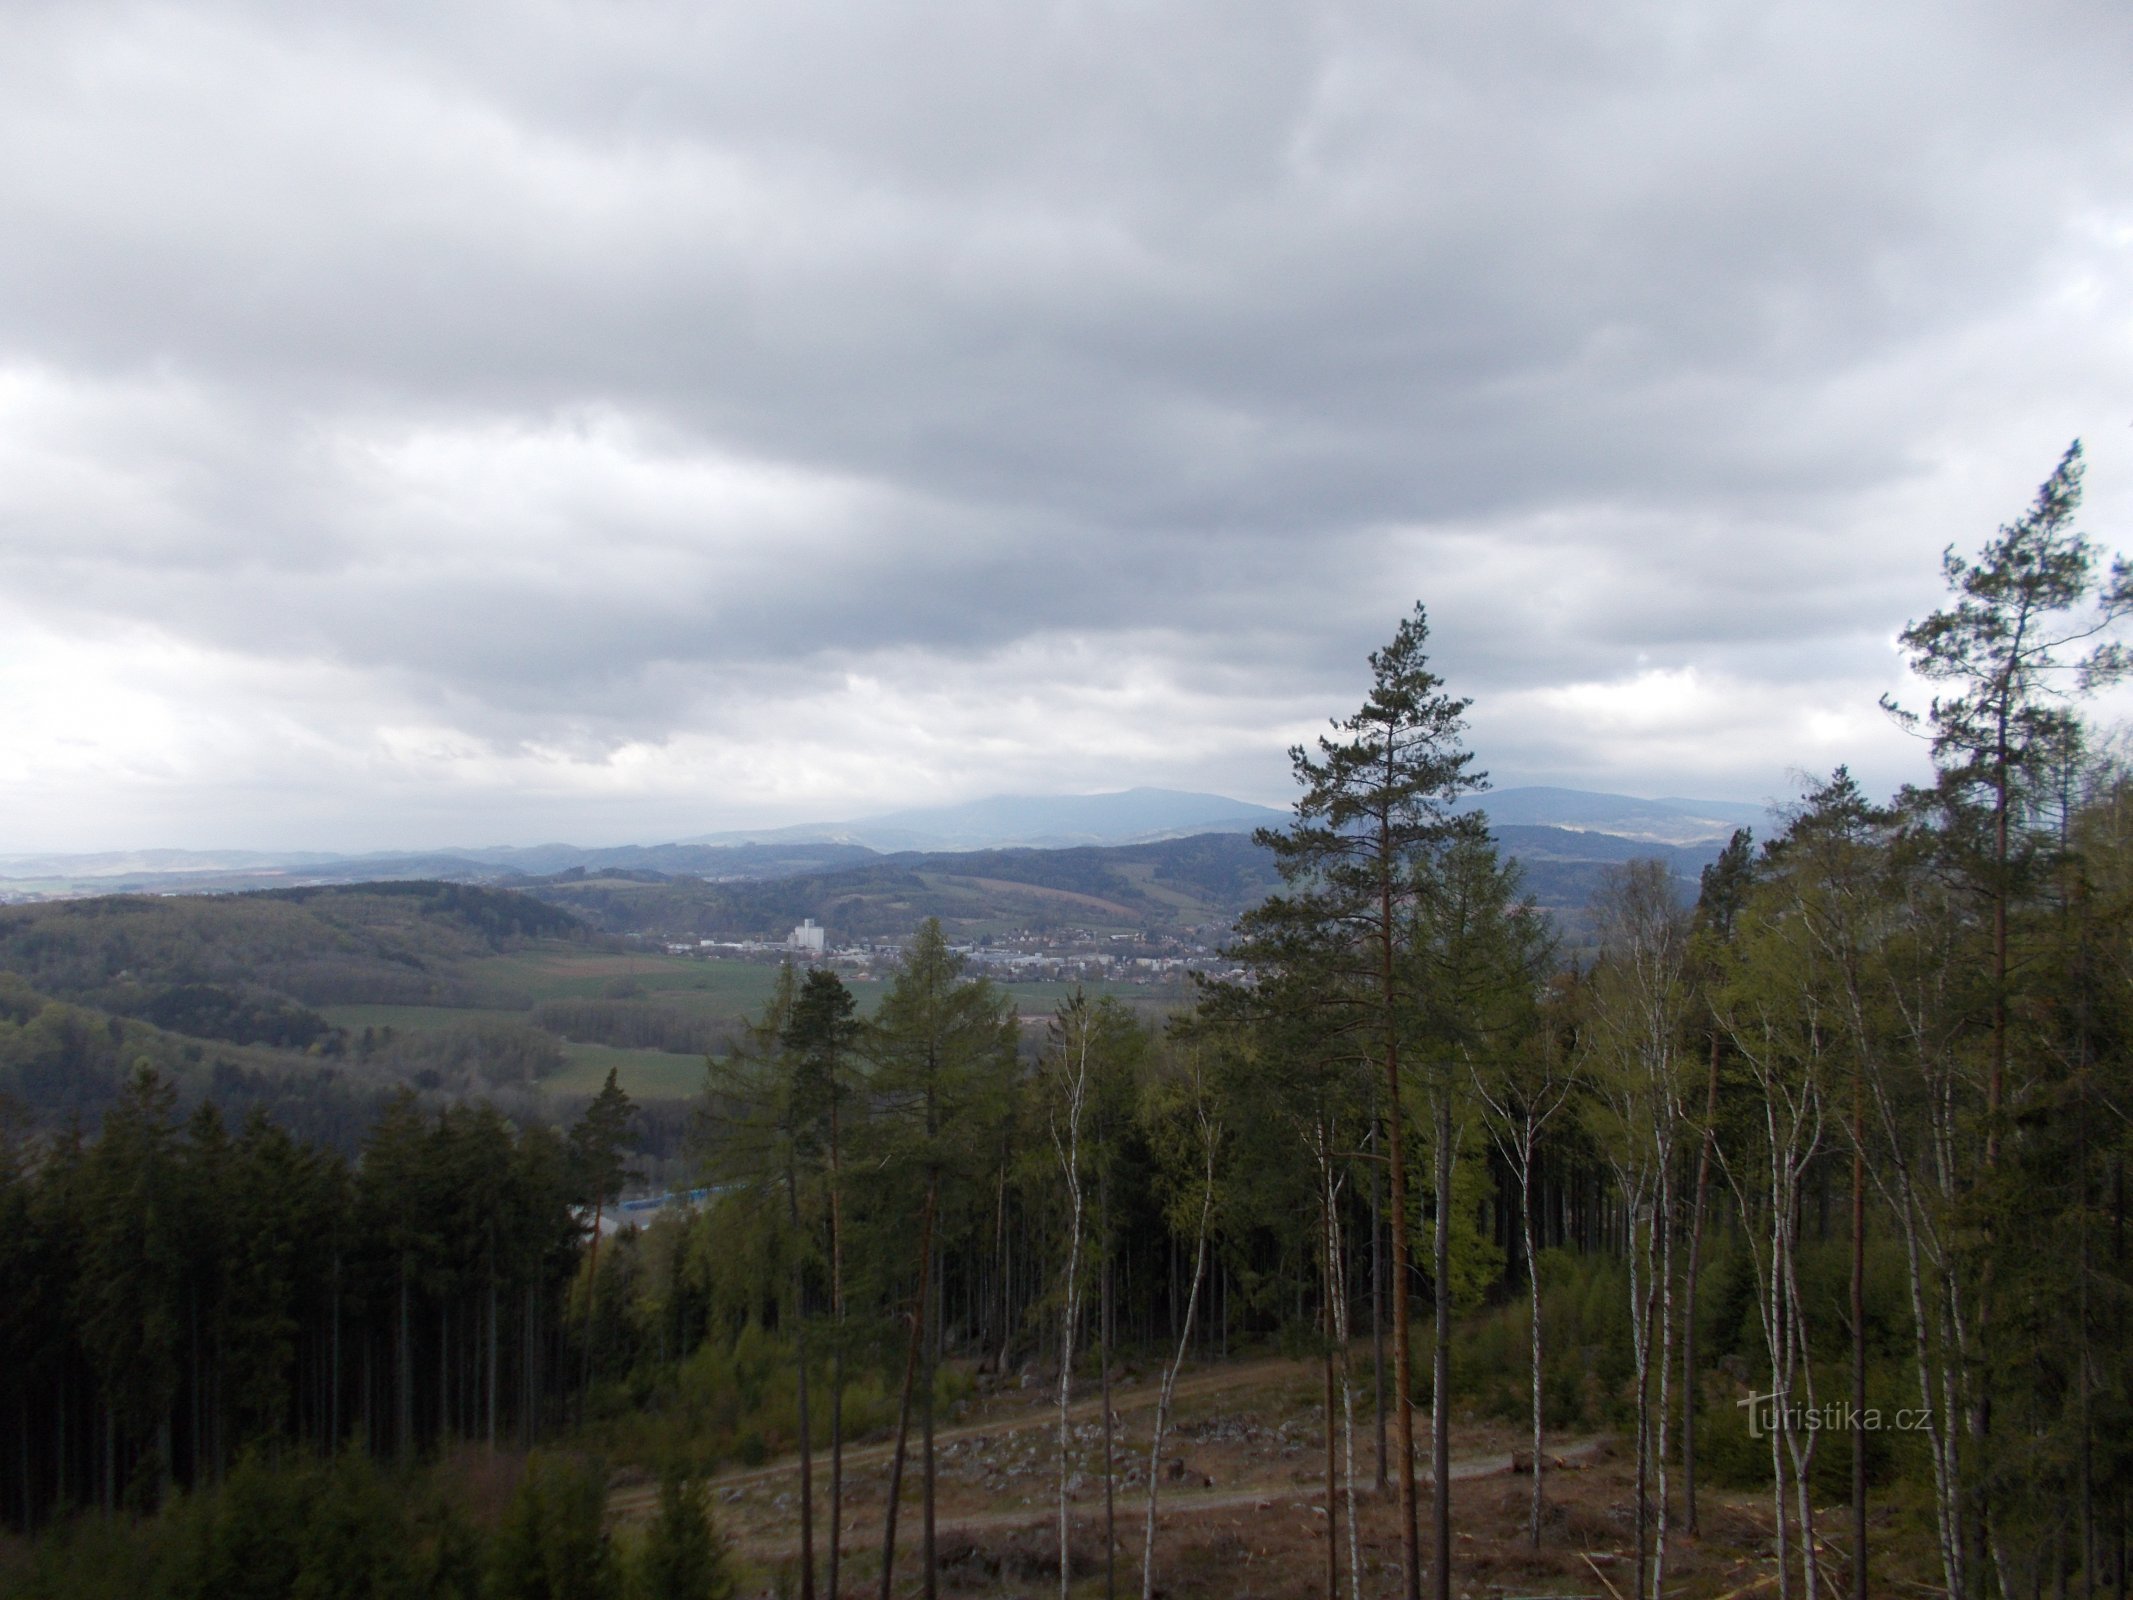 The view from the Čižka stones